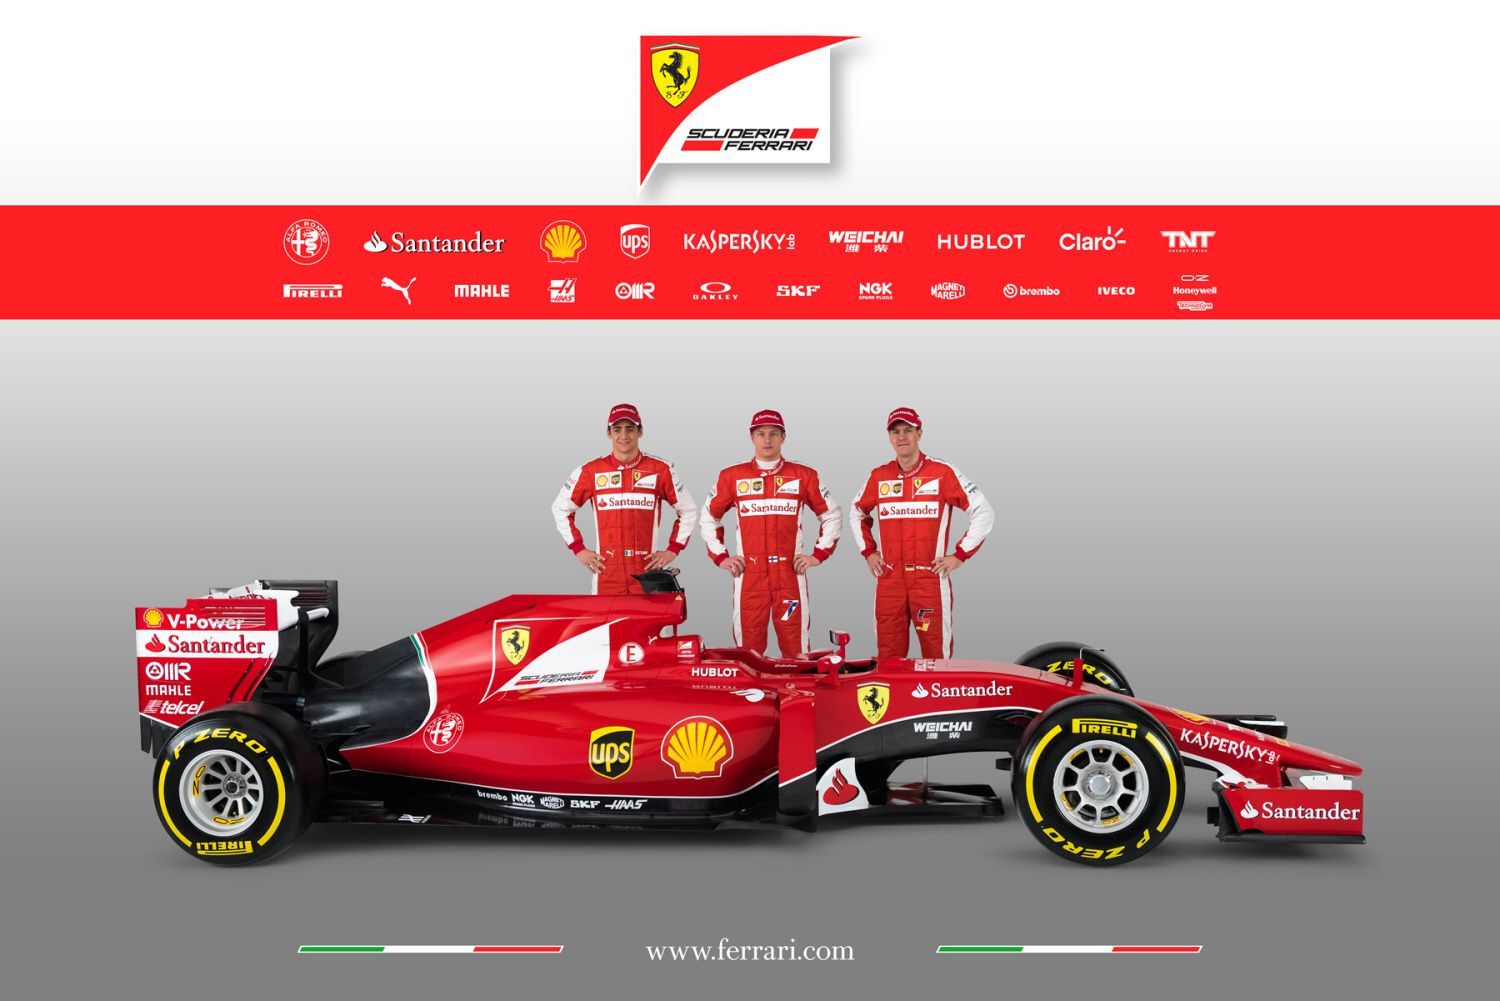 F1: Ferrari SF15-T (2015), Sebastian Vettel, Kimi Räikkönen a Esteban Gutiérrez